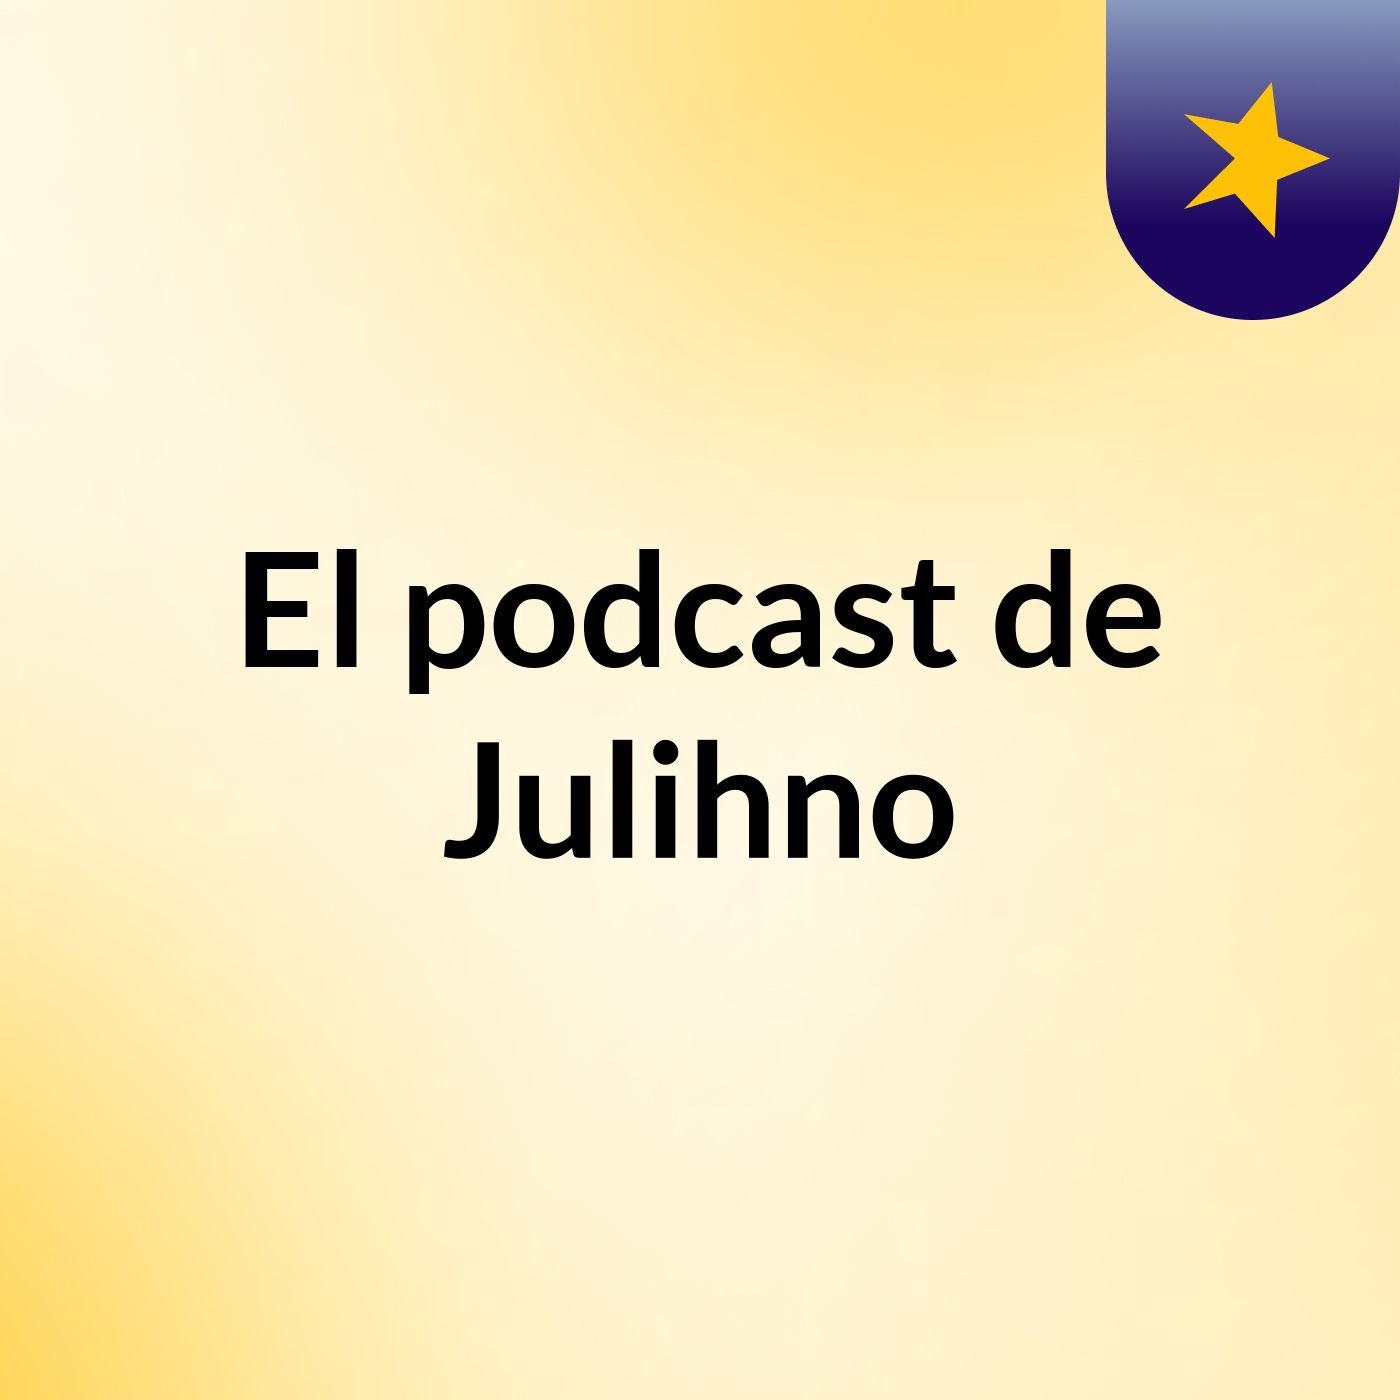 El podcast de Julihno